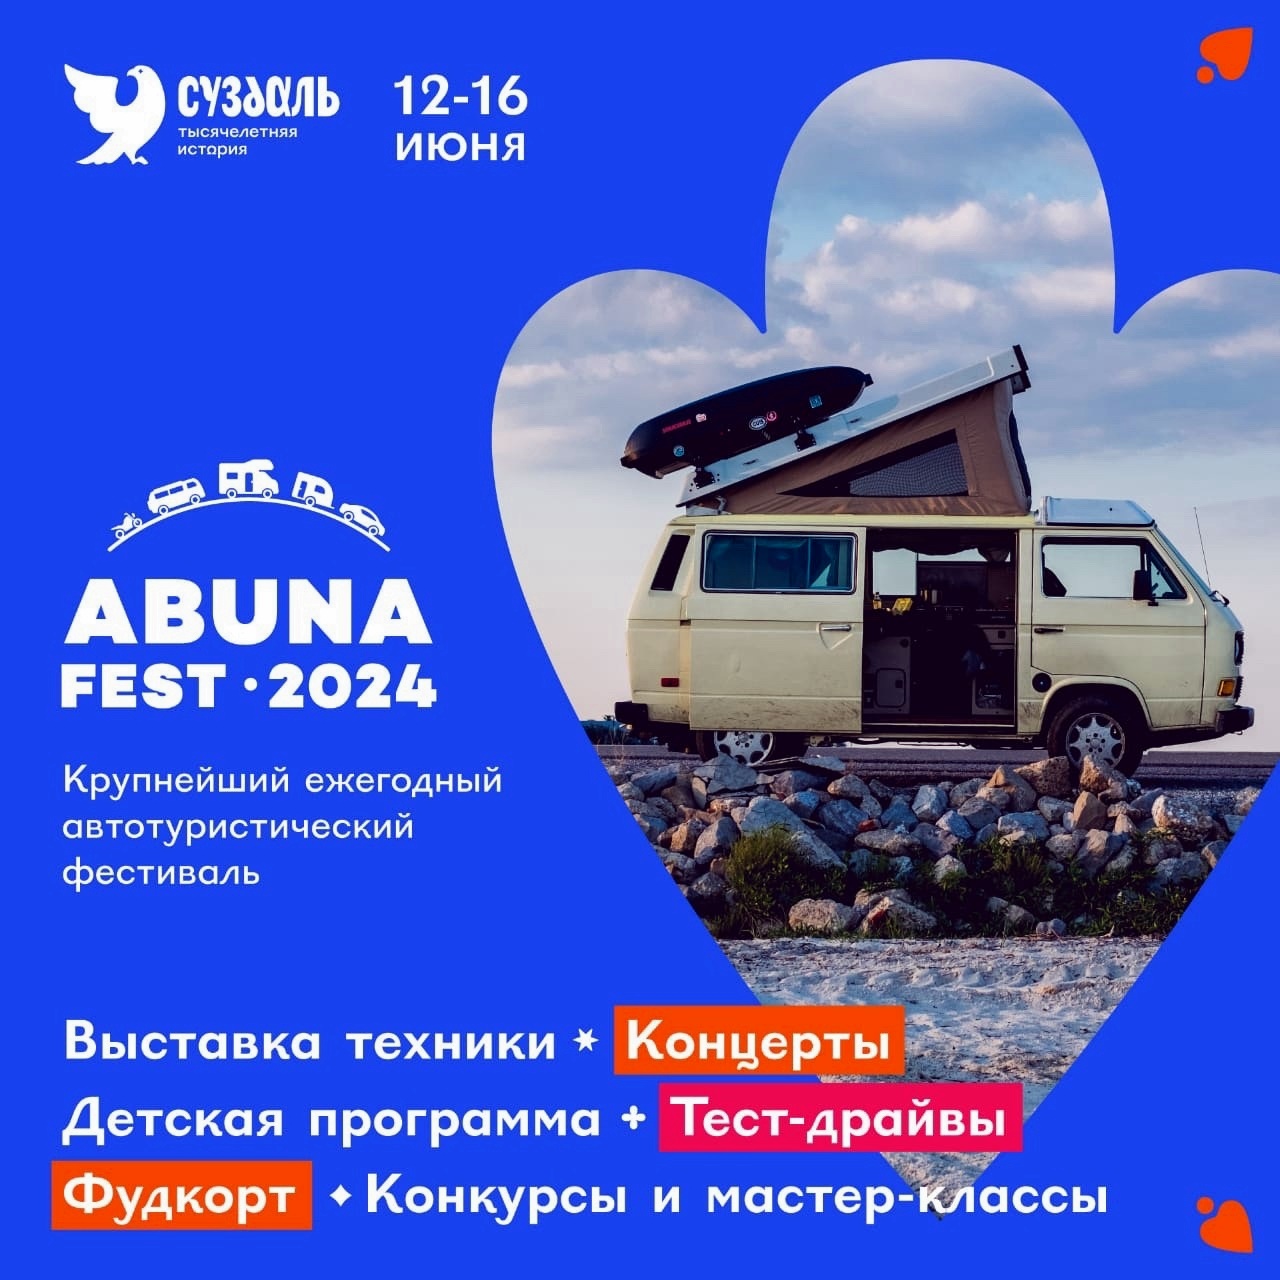 Уже завтра в Суздале стартует самый масштабный в России автотуристический фестиваль Абунафест